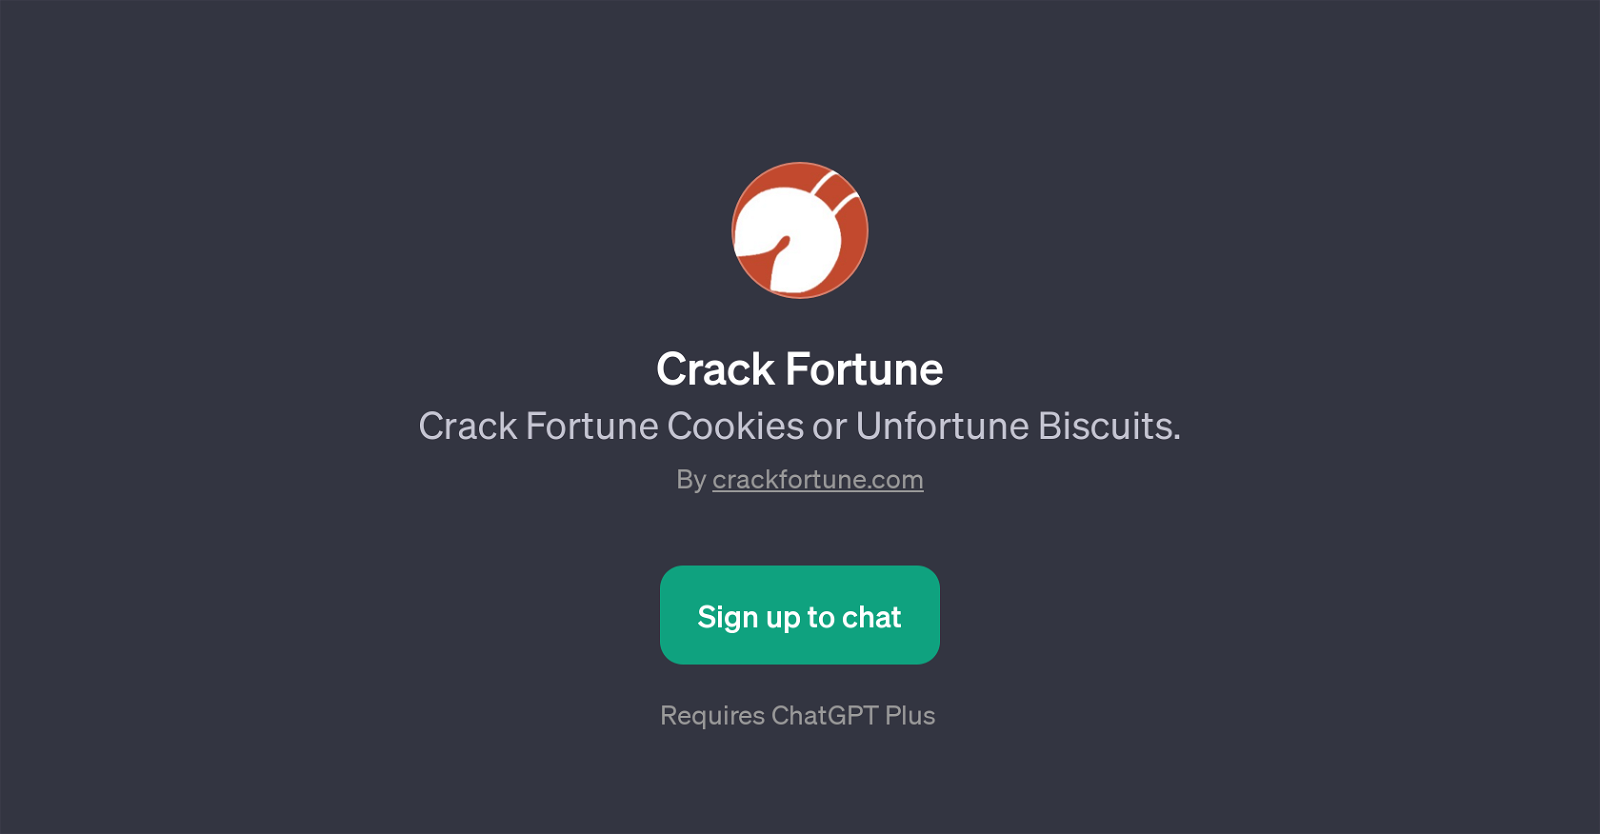 Crack Fortune website